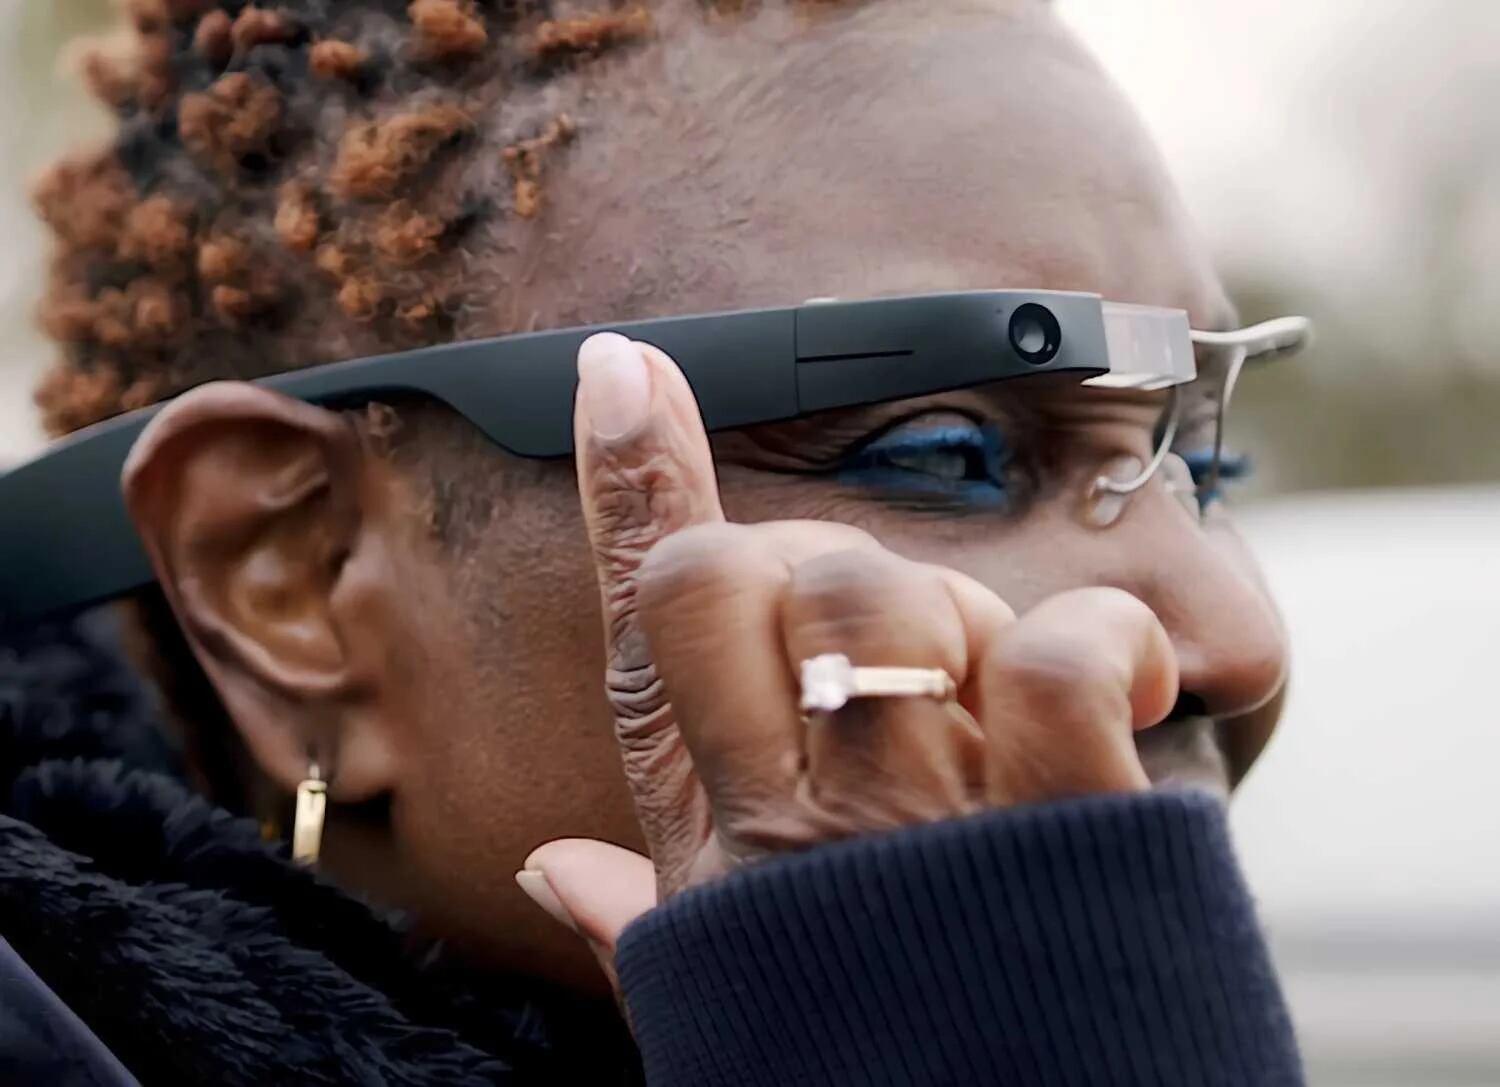 La aplicación "Ask Envision" usa los lentes Google Glass como soporte para permitir que los usuarios con discapacidad visual reconozcan su entorno. (Envision)